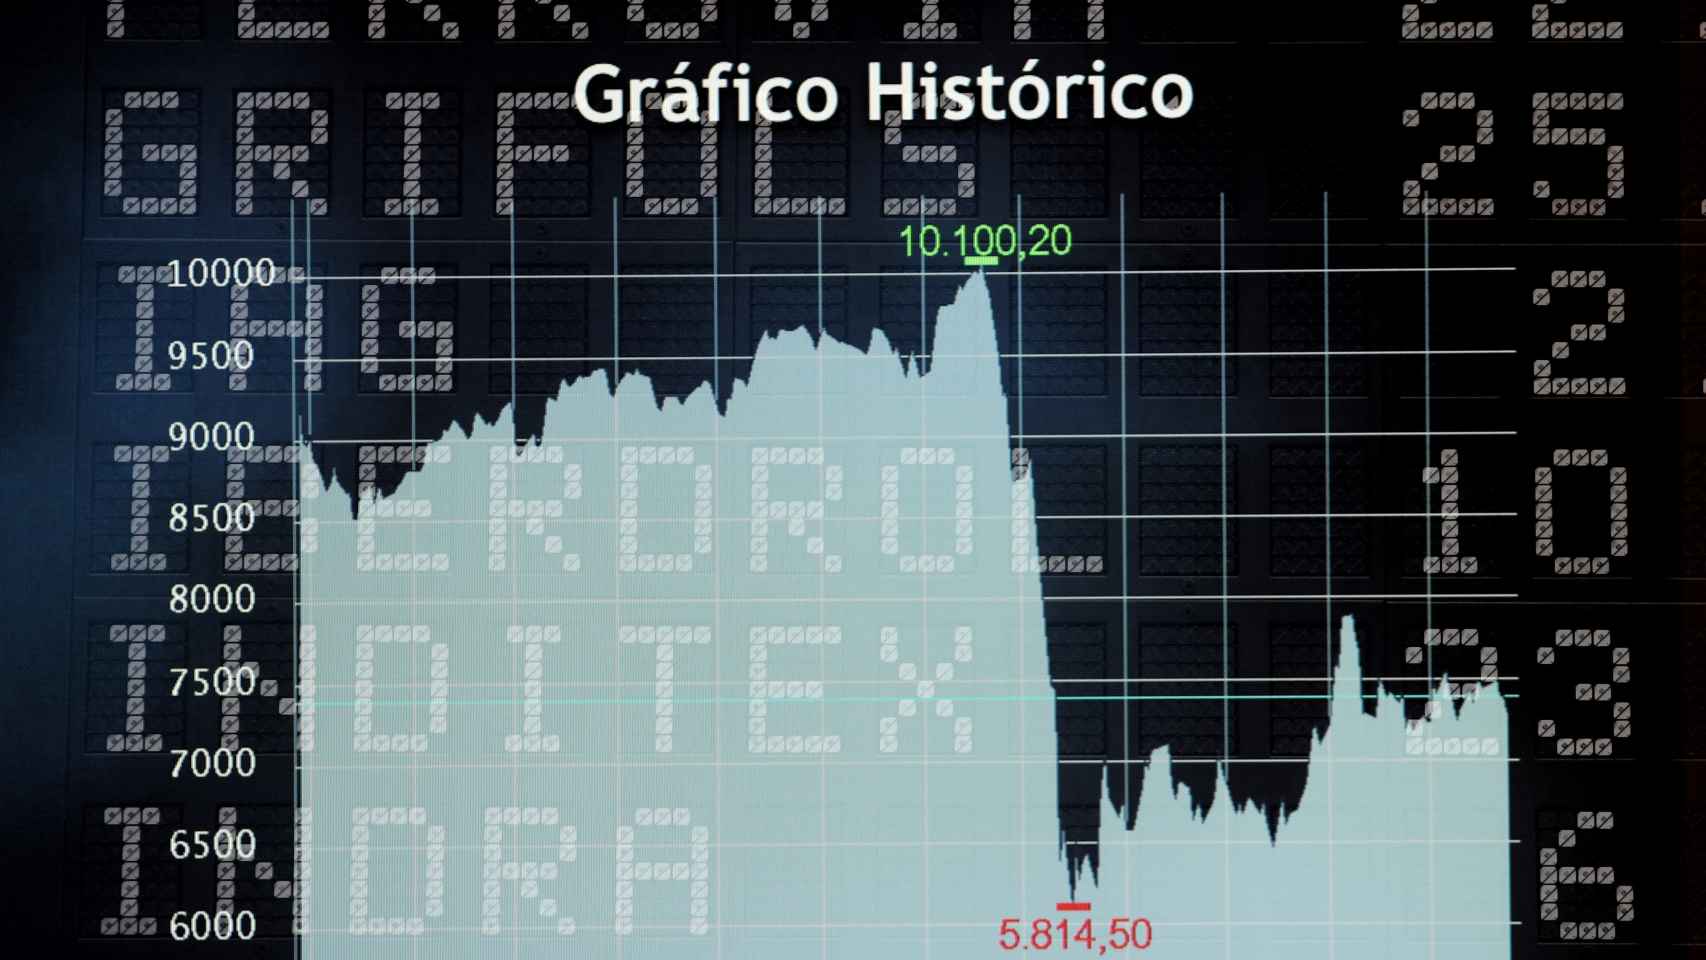 Gráfico histórico en la Bolsa de Madrid en julio de 2020.